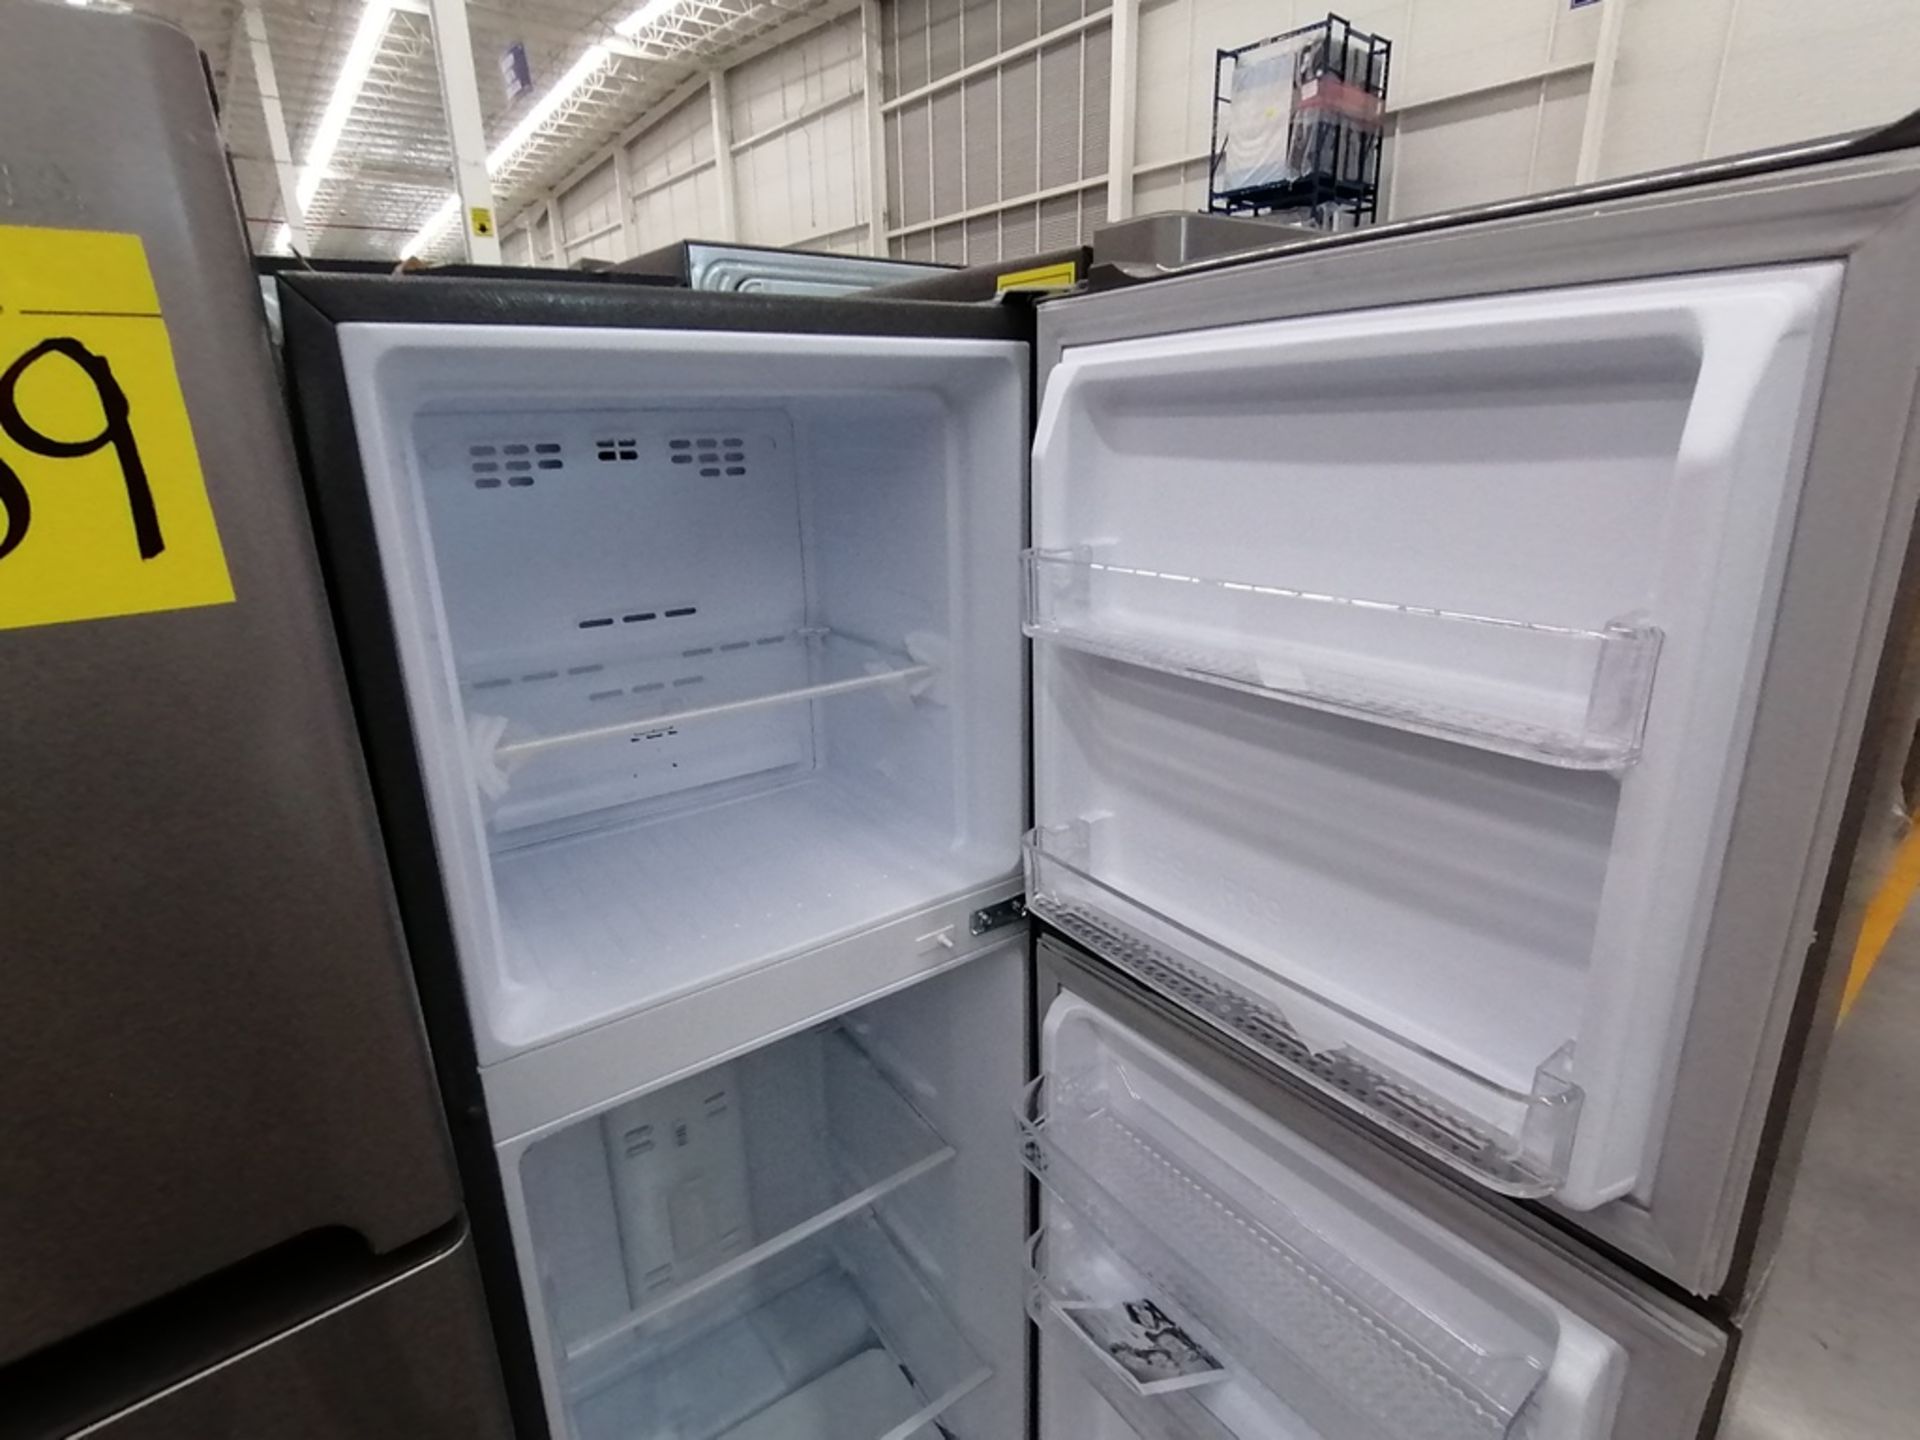 Lote de 2 refrigeradores incluye: 1 Refrigerador, Marca Winia, Modelo DFR25210GN, Serie MR219N11602 - Image 6 of 15